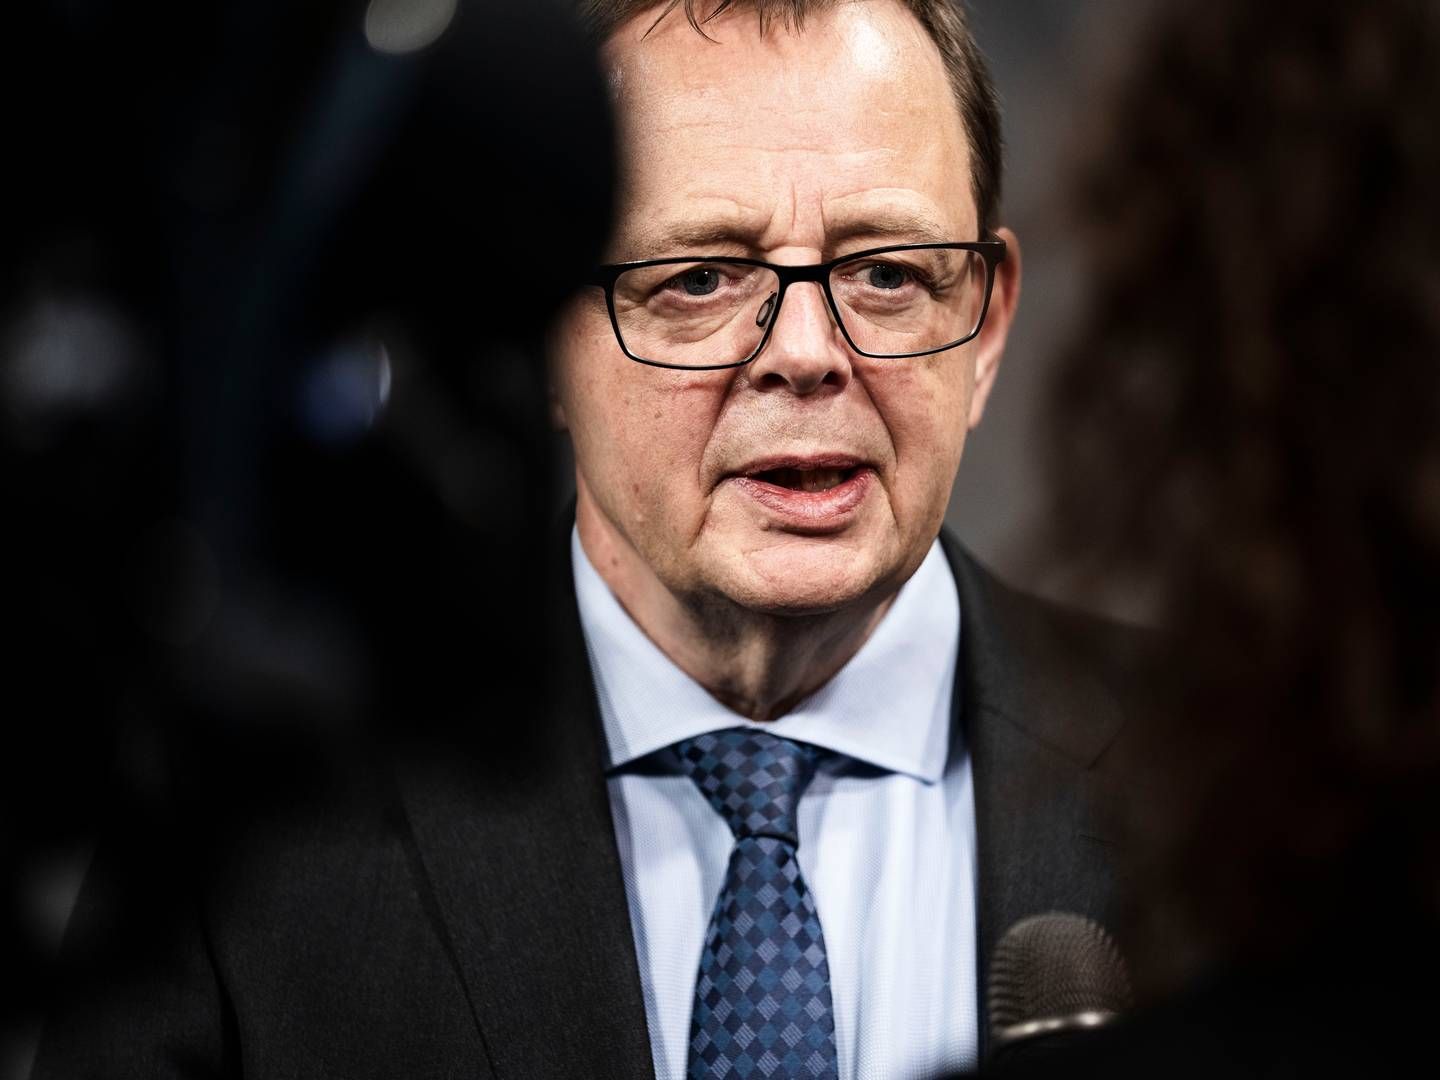 Nationalbankdirektør Christian Kettel Thomsen er formand for Det Systemiske Risikoråd, der har anbefalet det øgede kapitalkrav. | Foto: Thomas Traasdahl